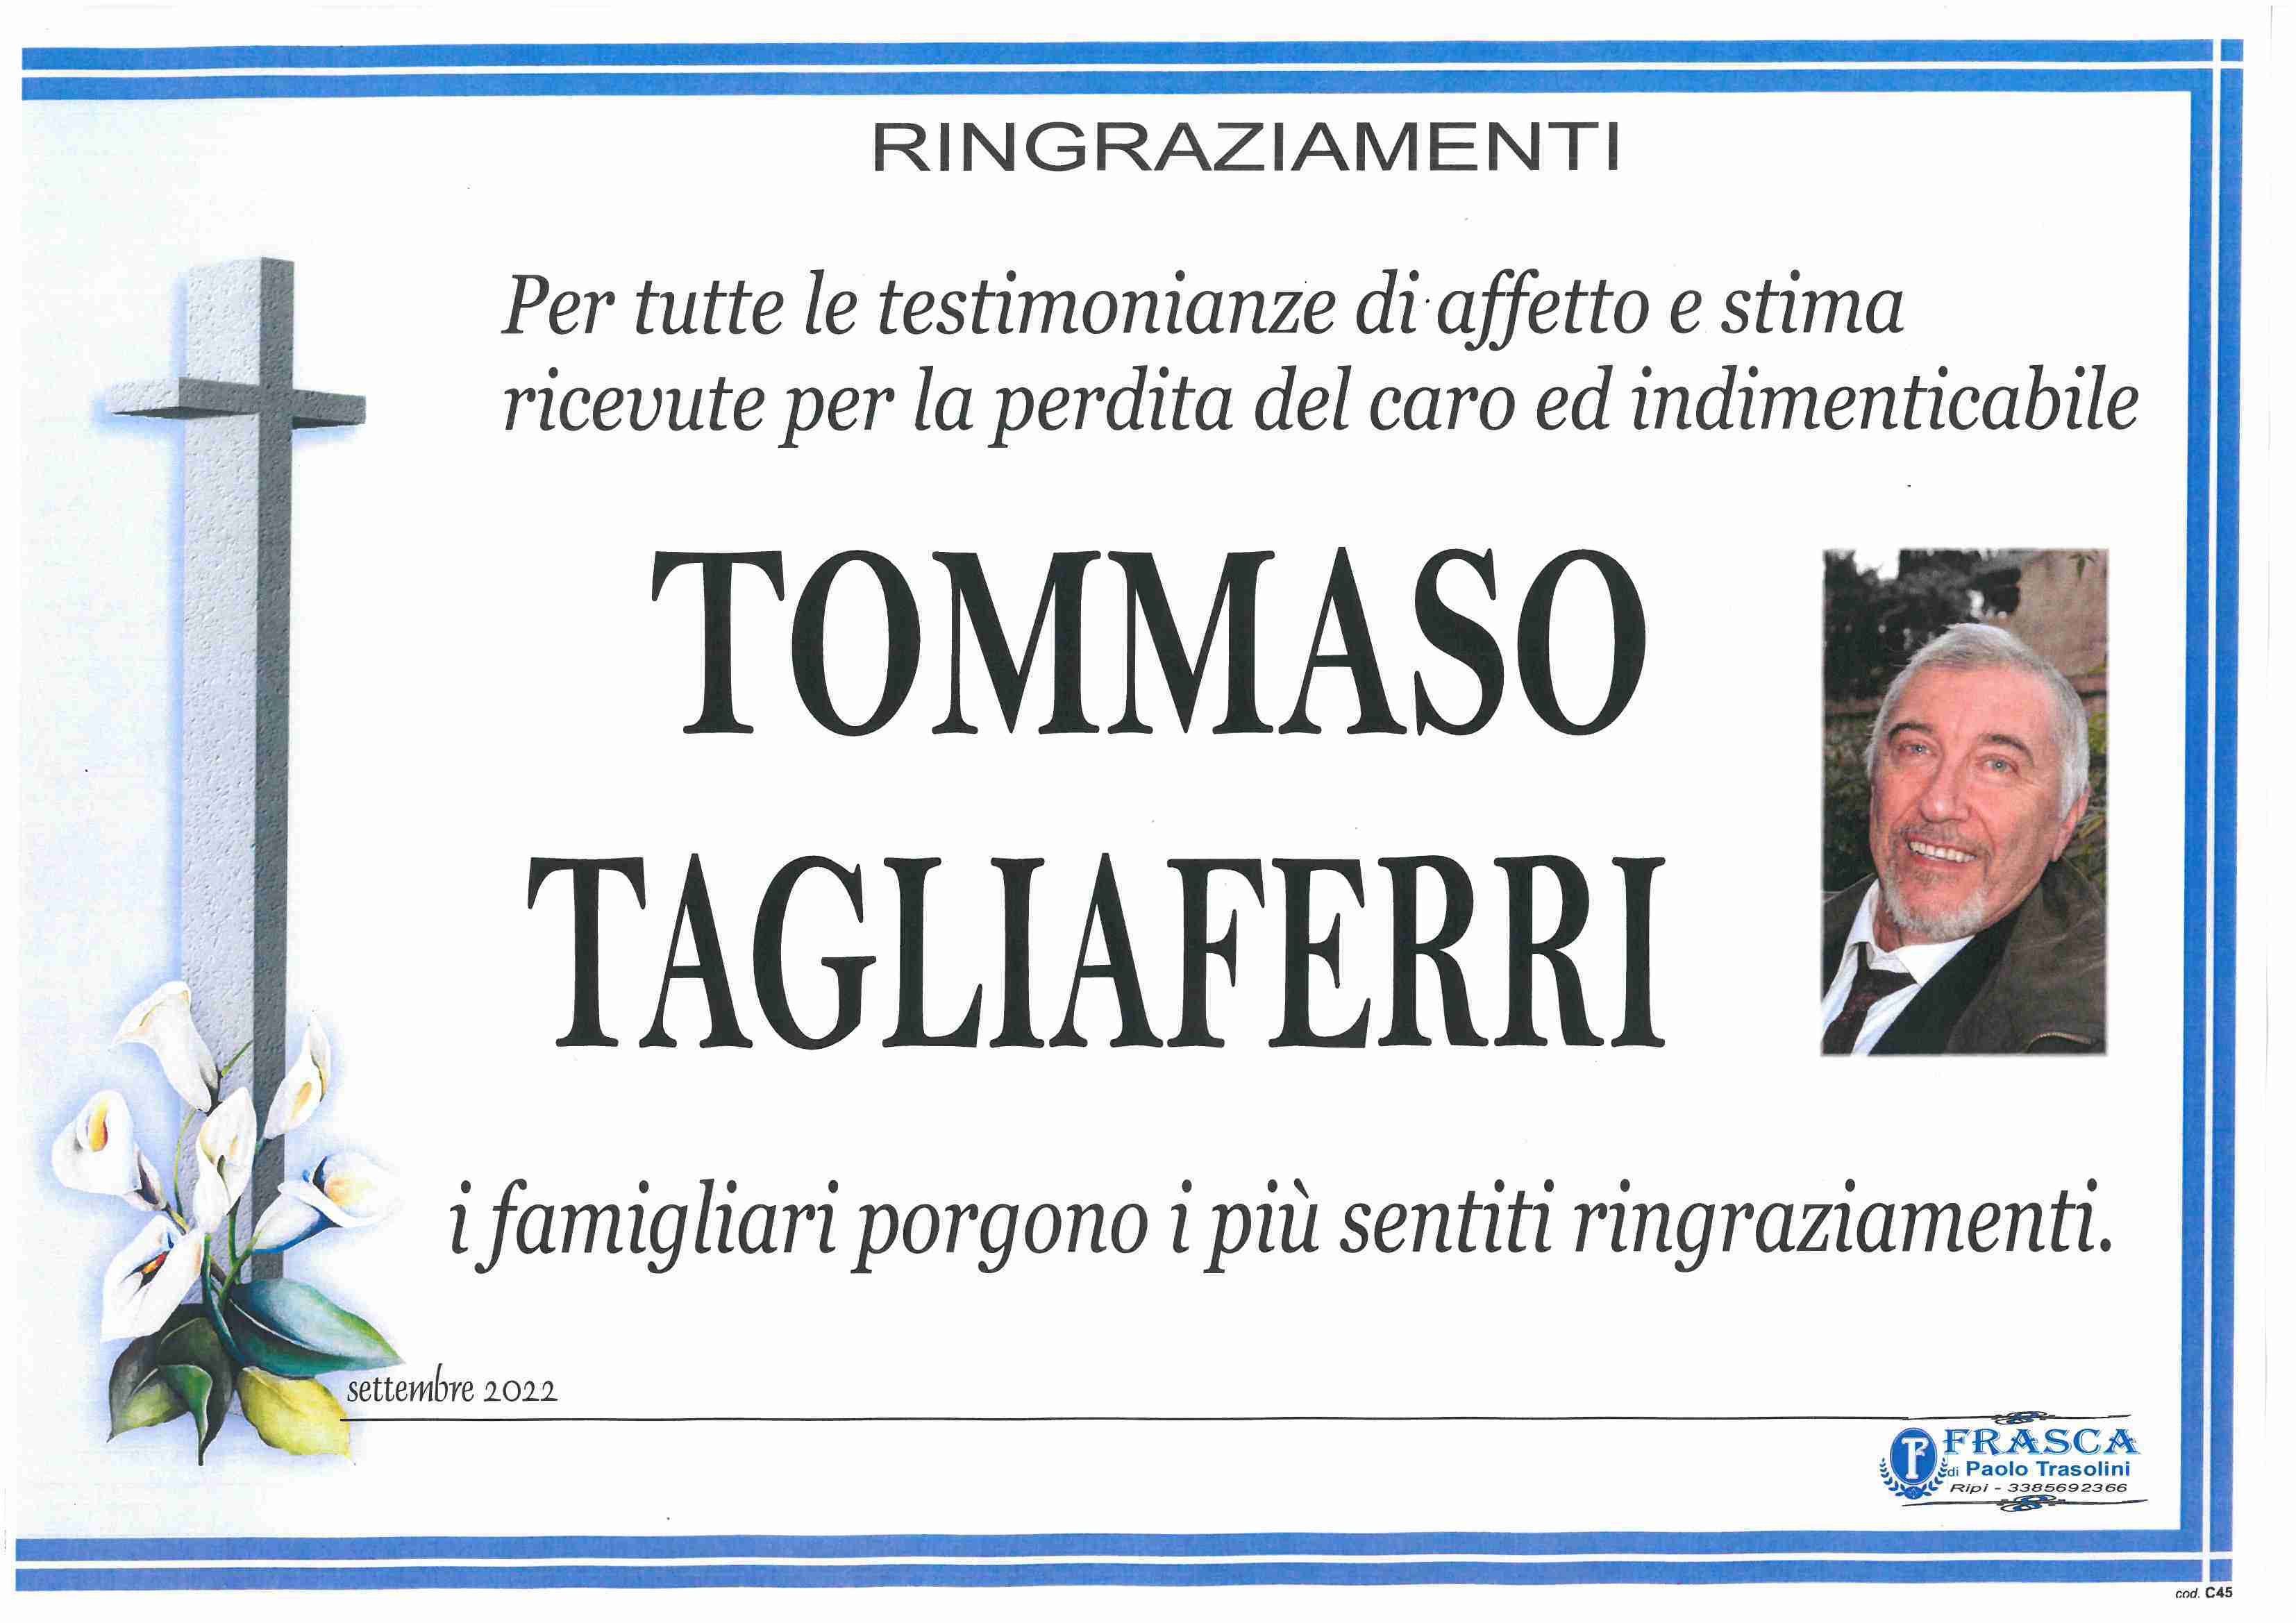 Tommaso Tagliaferri